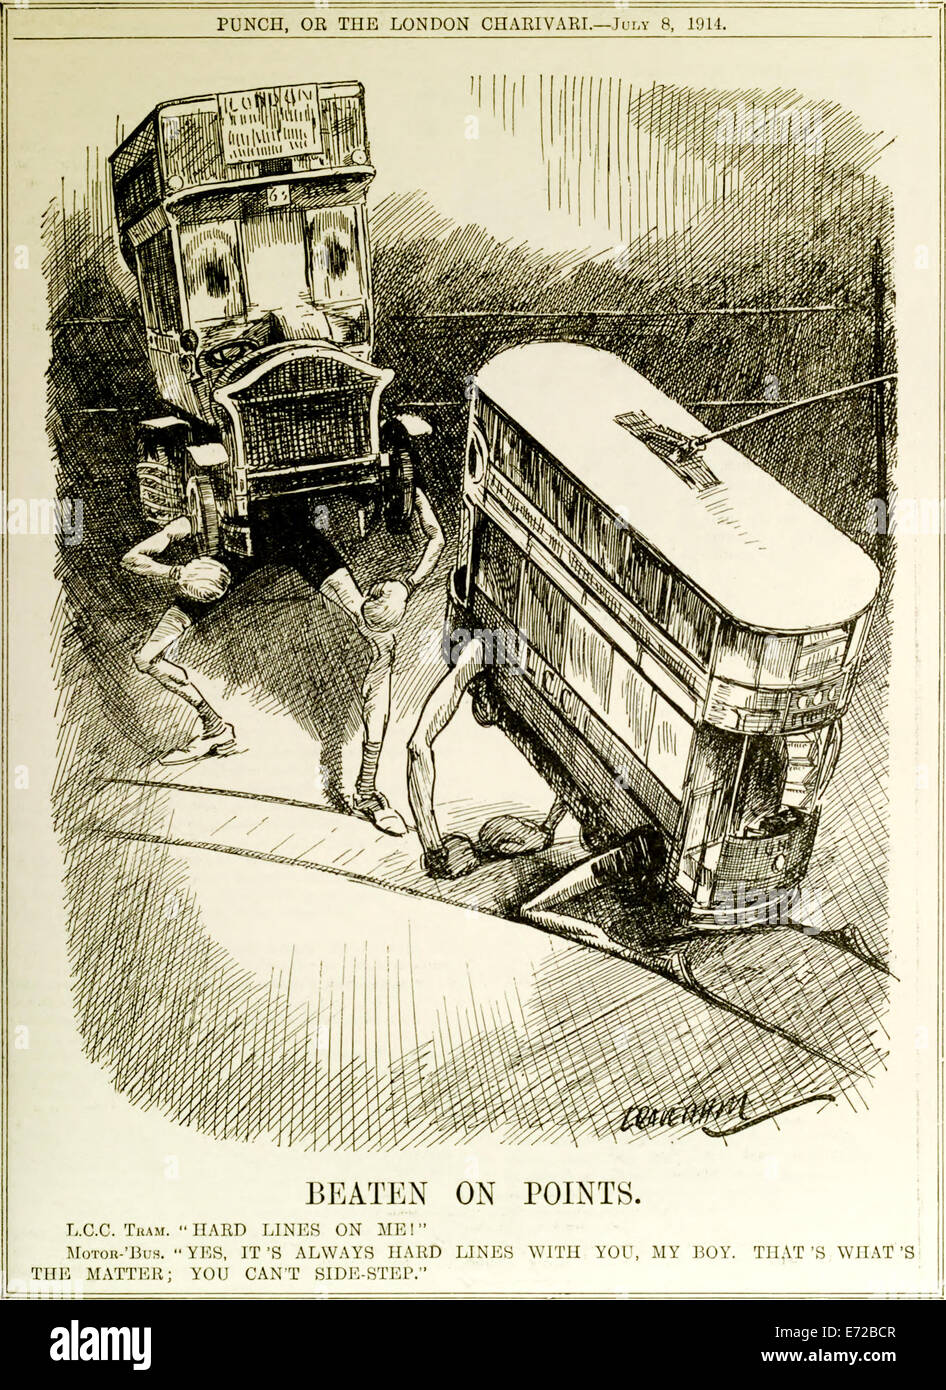 'Nach Punkten geschlagen' Punch Cartoon Magazin September 1914, Vorteil des Busses gegenüber Straßenbahn. Siehe Beschreibung für mehr Informationen. Stockfoto